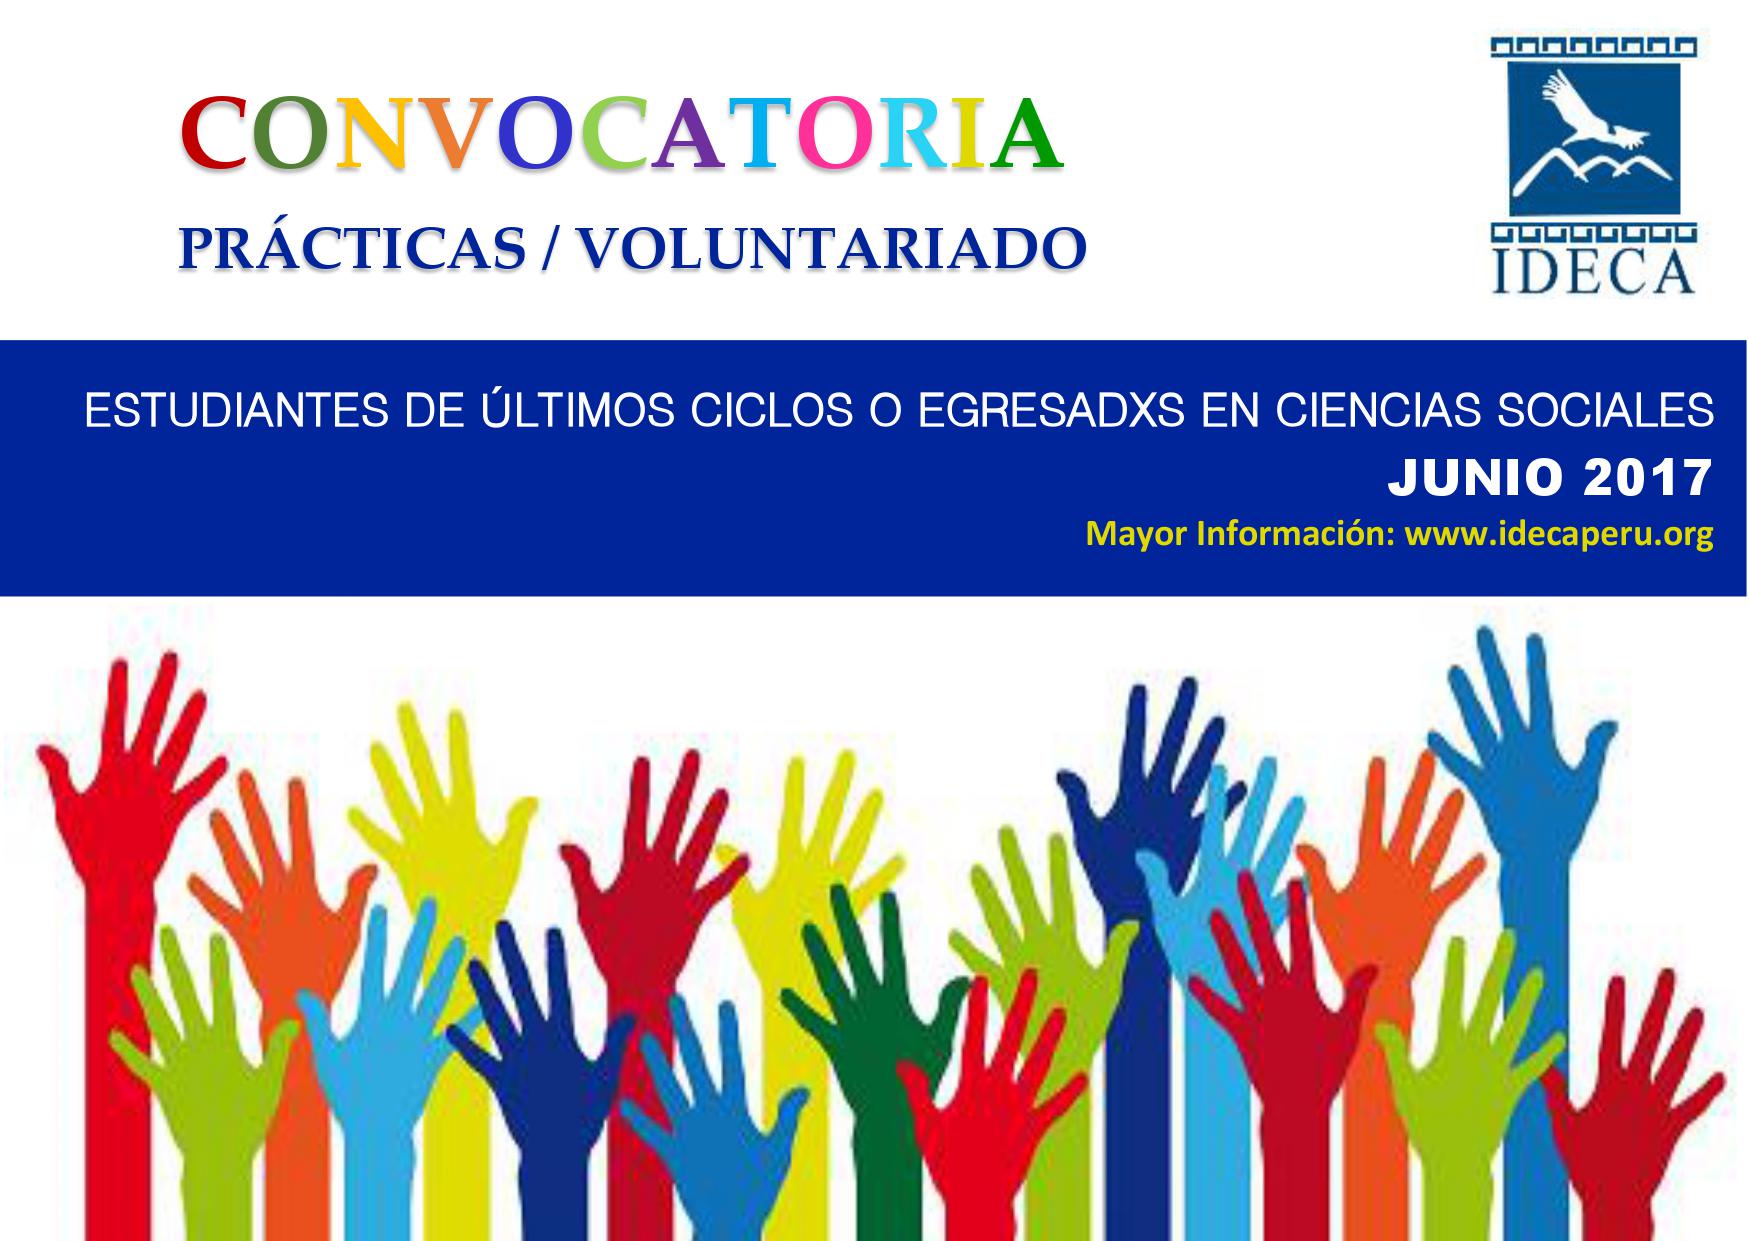 CONVOCATORIA: Prácticas y Voluntariado IDECA 2017